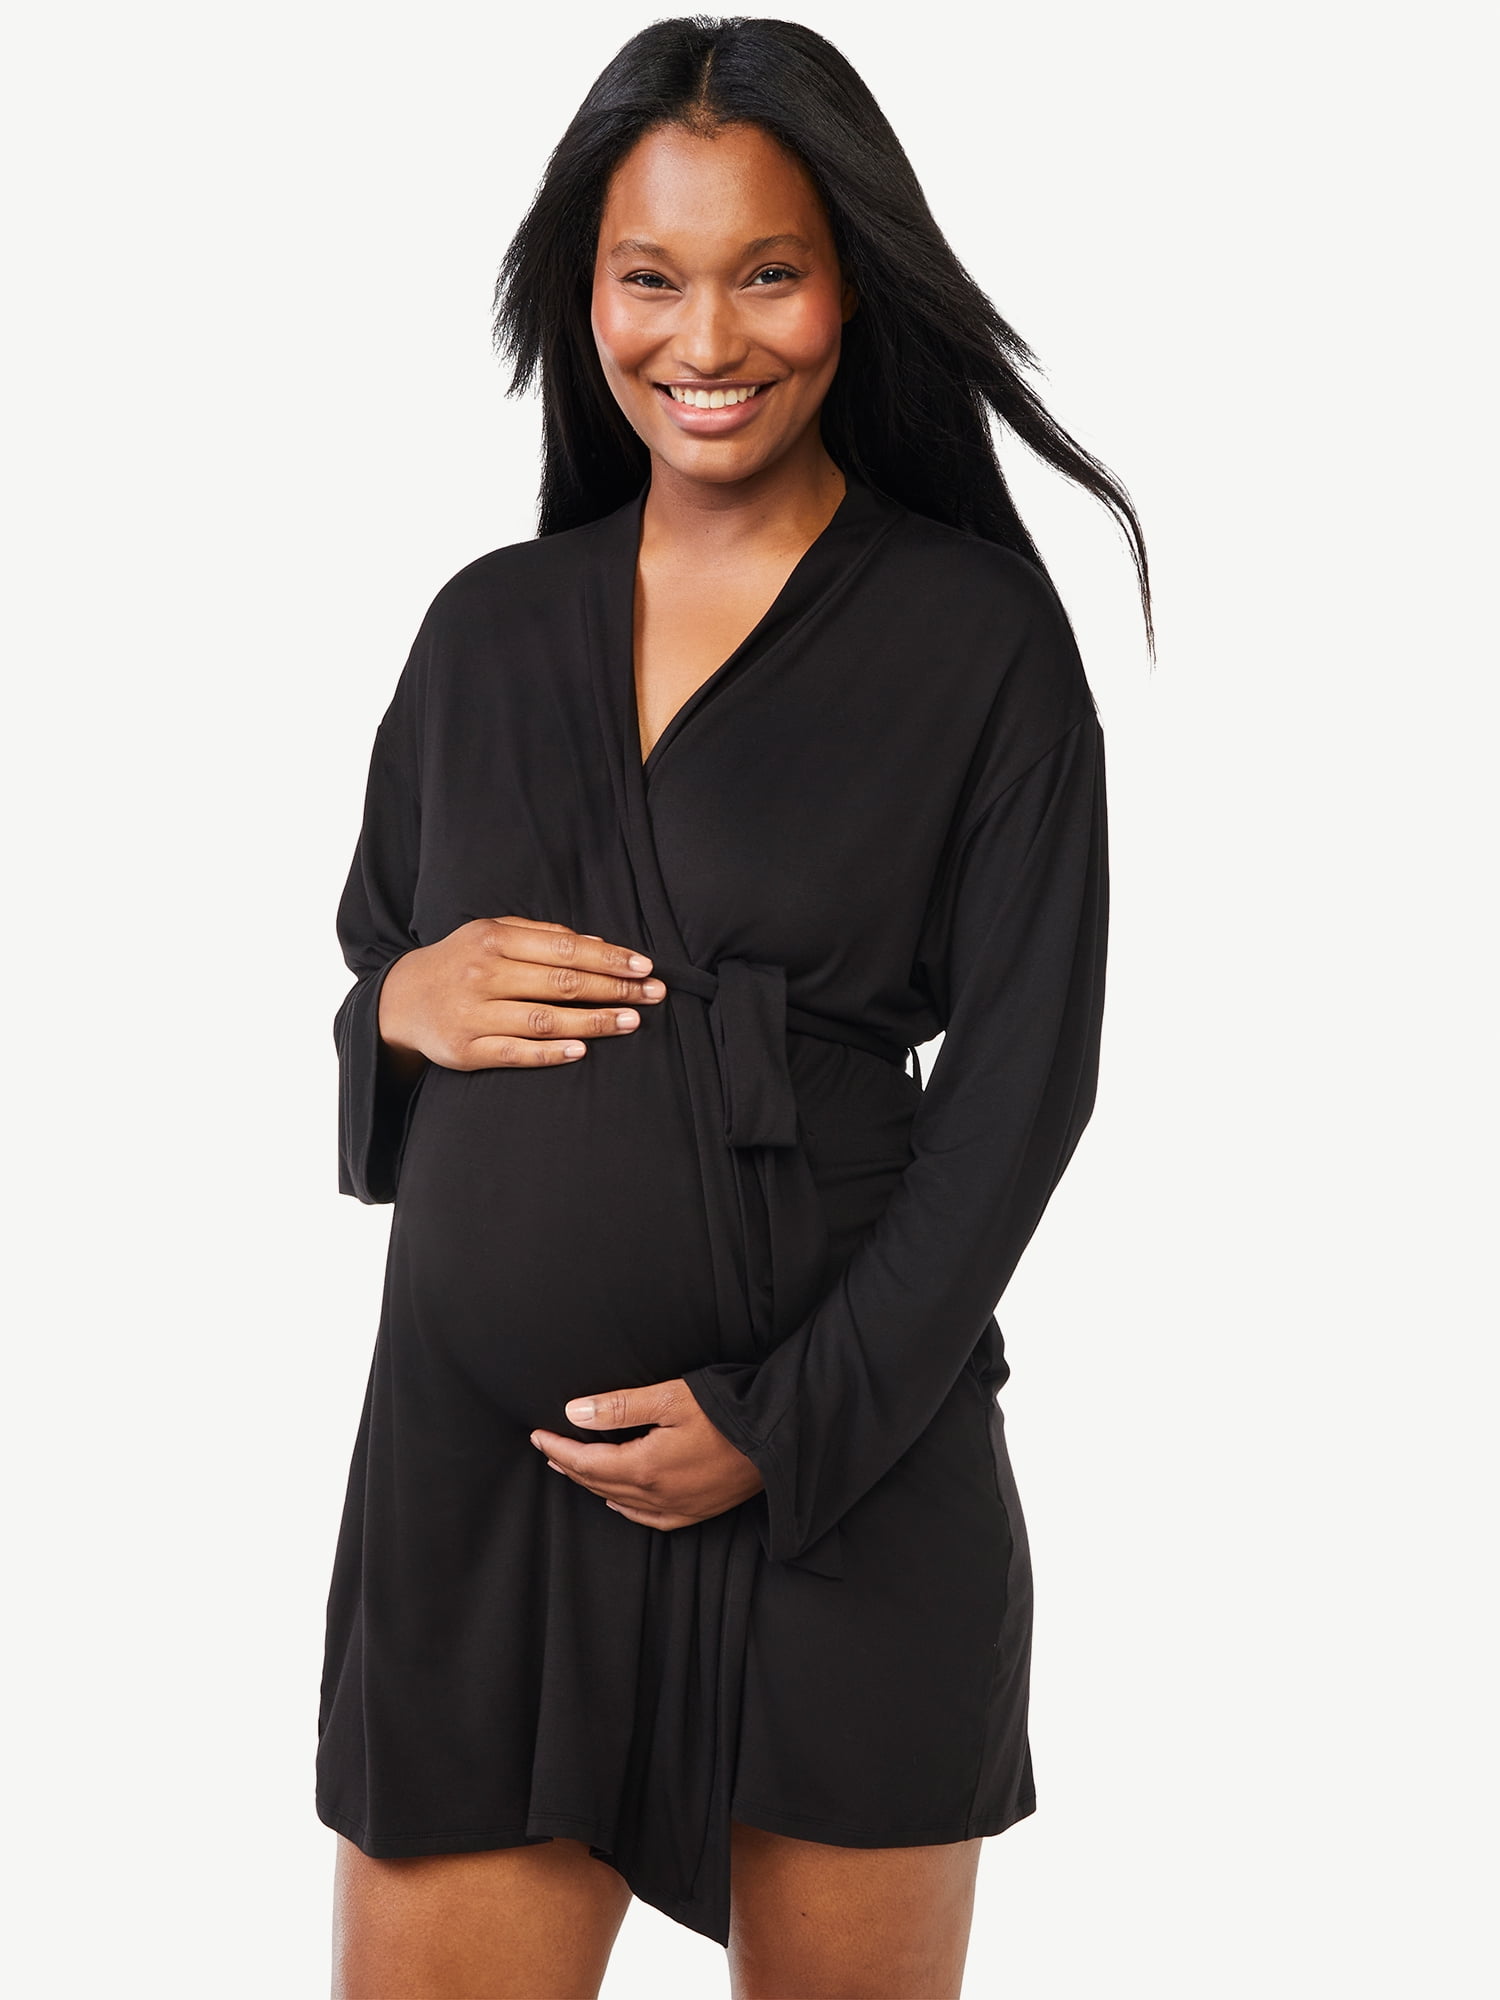 Joyspun Women's Maternity Robe, Sizes S to 3X 